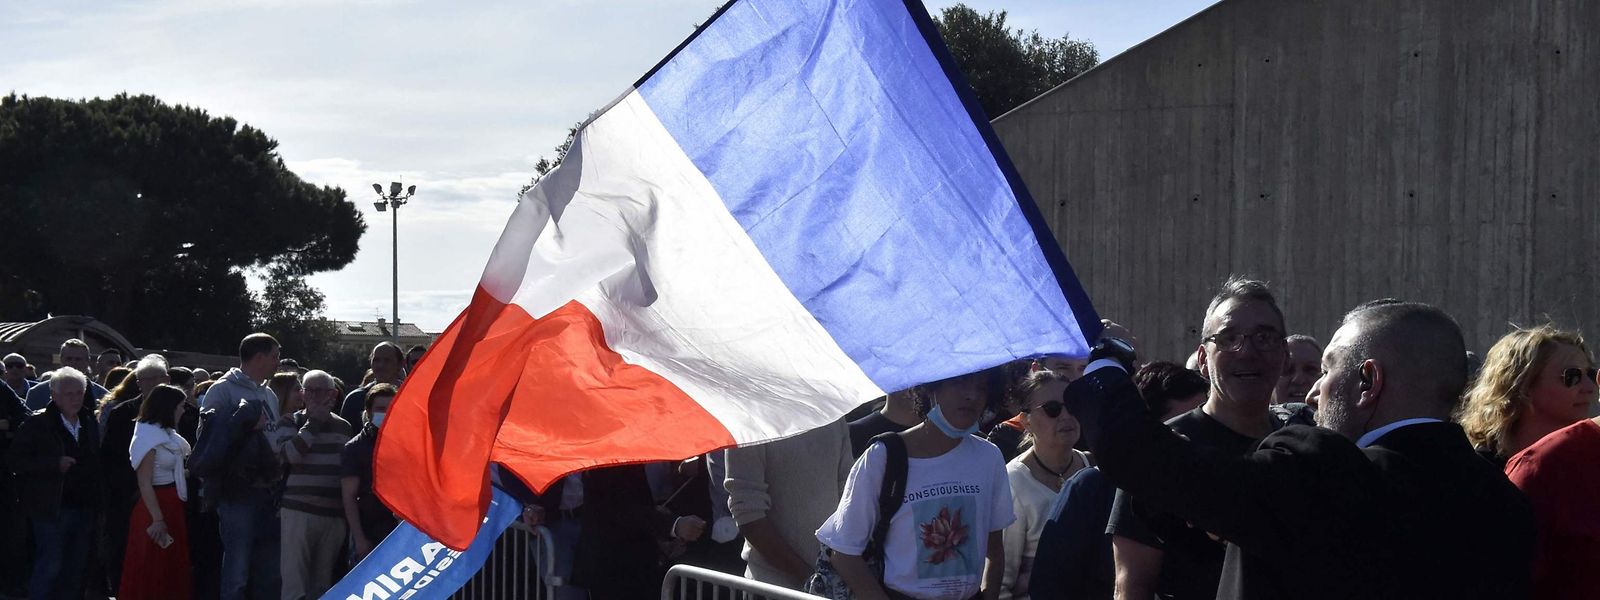 Un homme tient un drapeau national français en attendant d'entrer dans un meeting de campagne de Marine Le Pen (RN) à Perpignan.